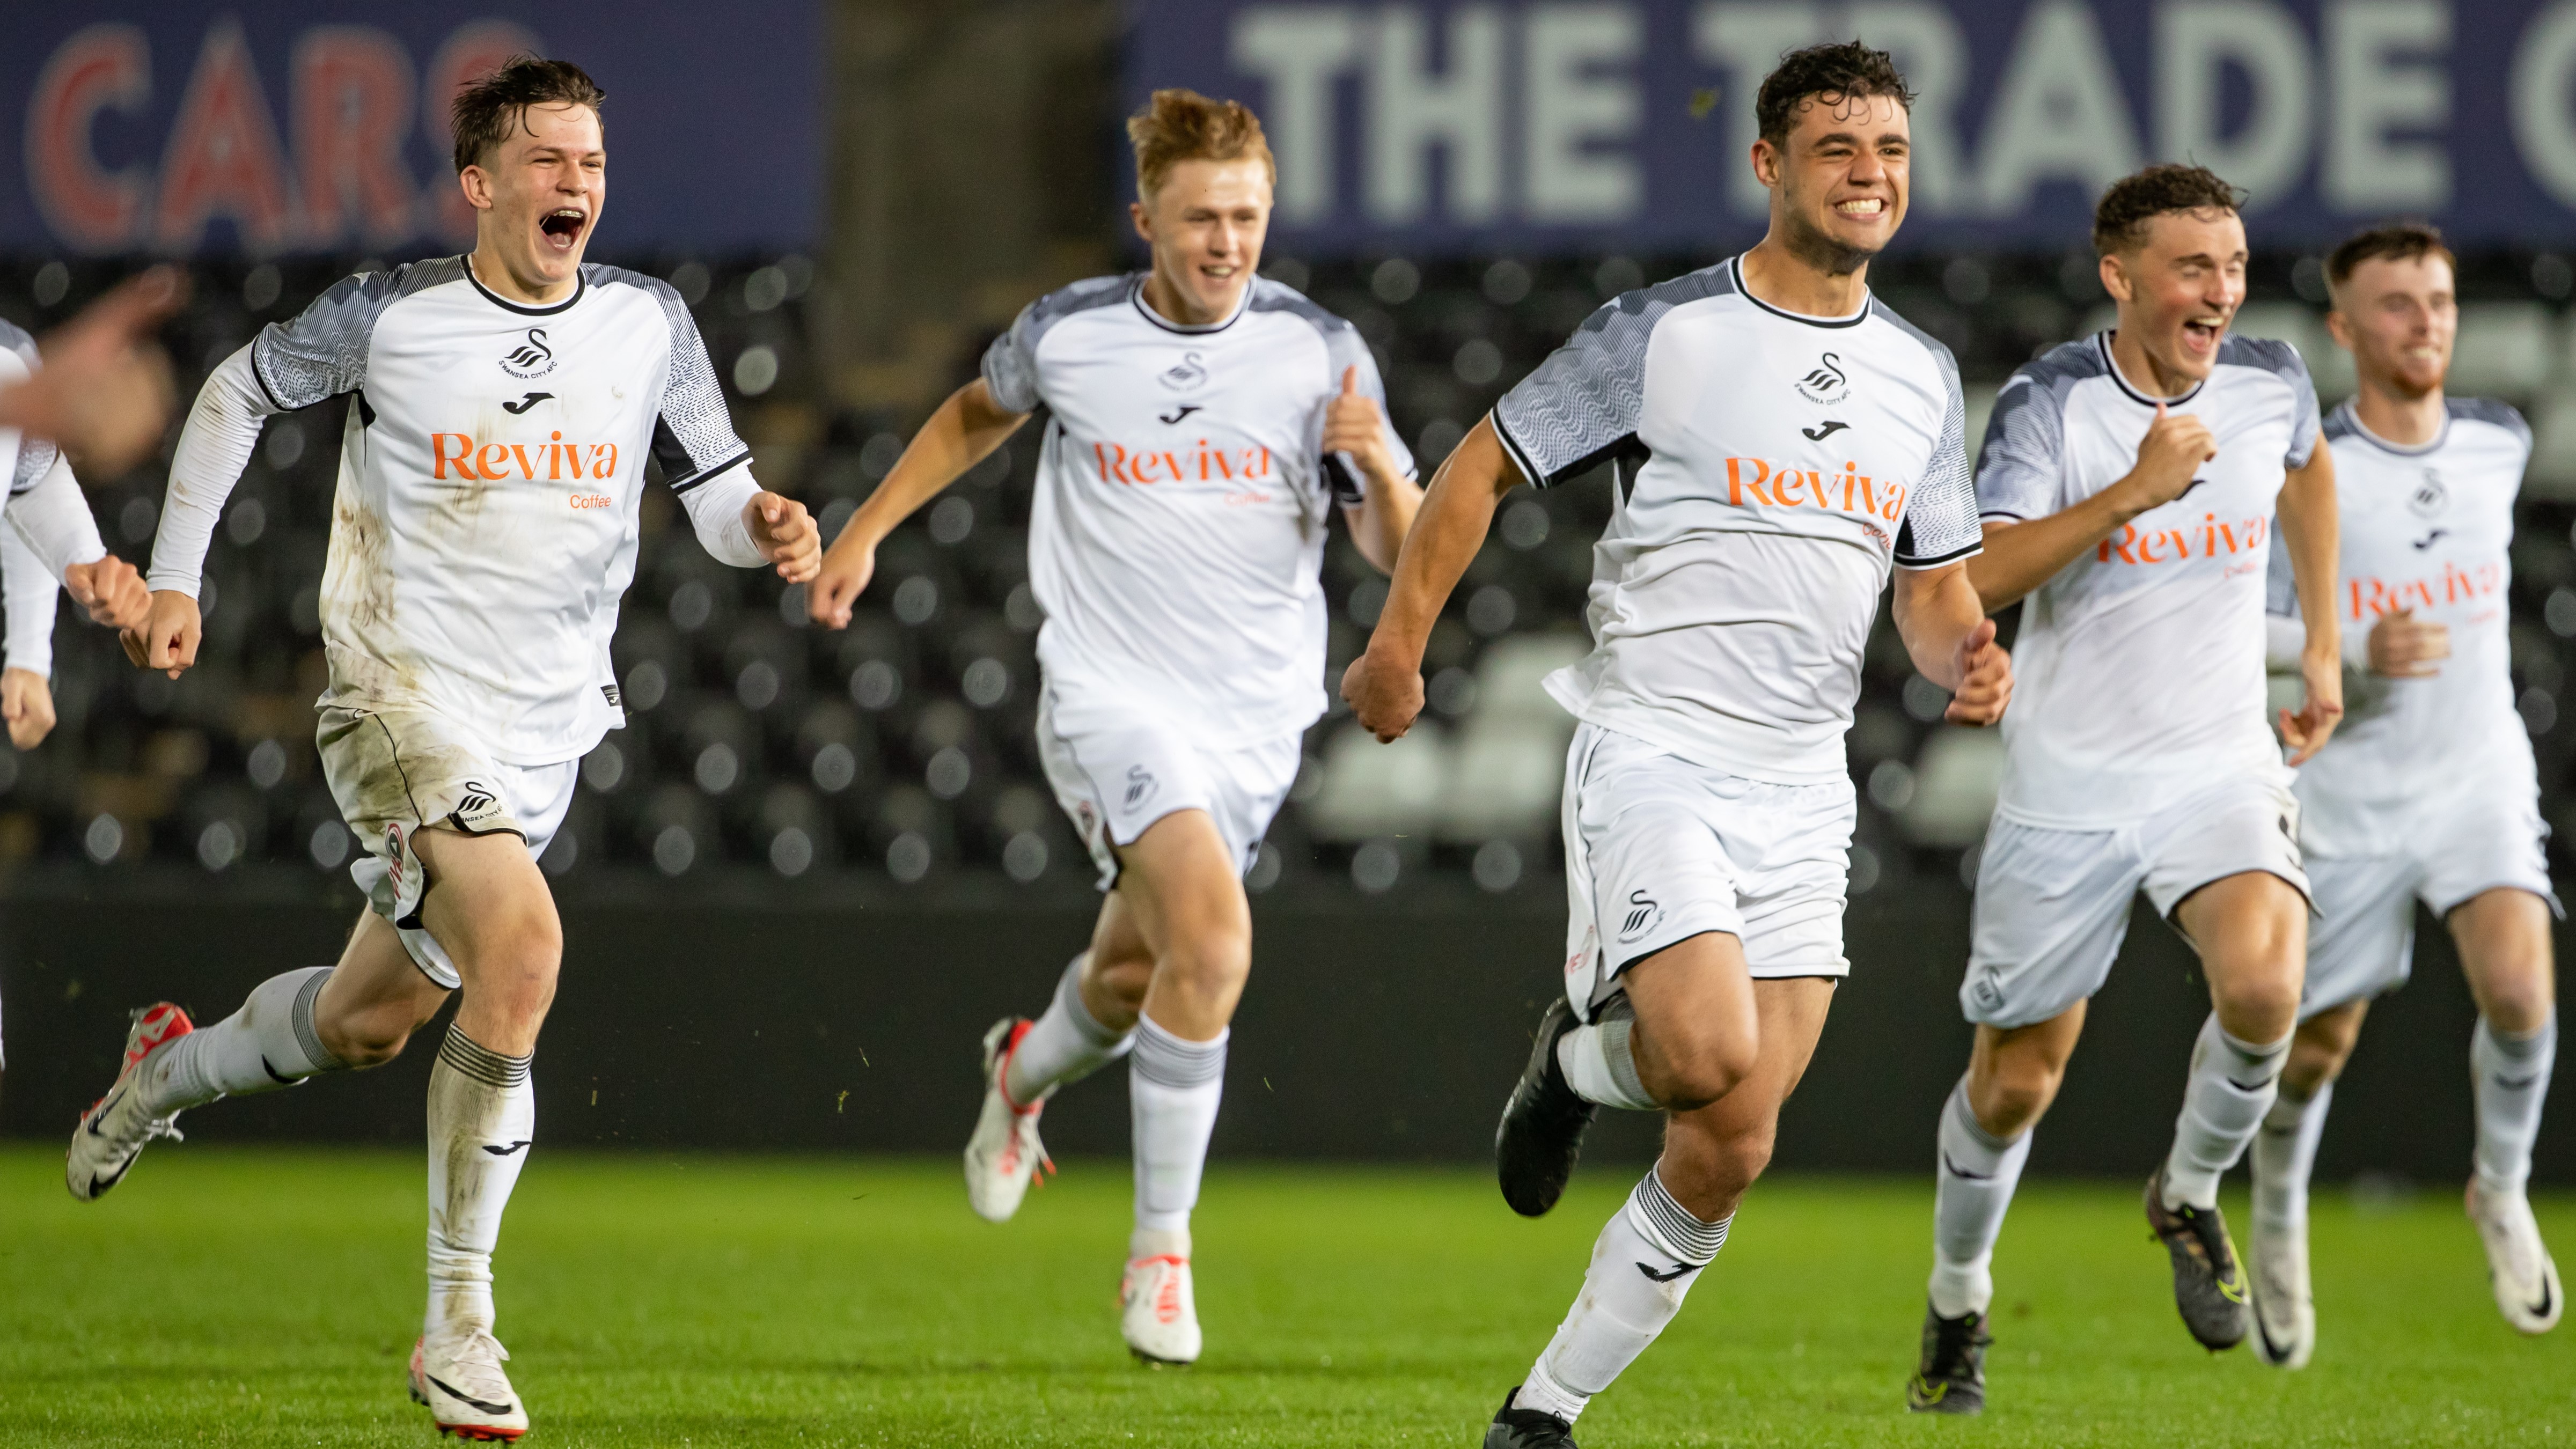 Swansea City U21s win on penalties